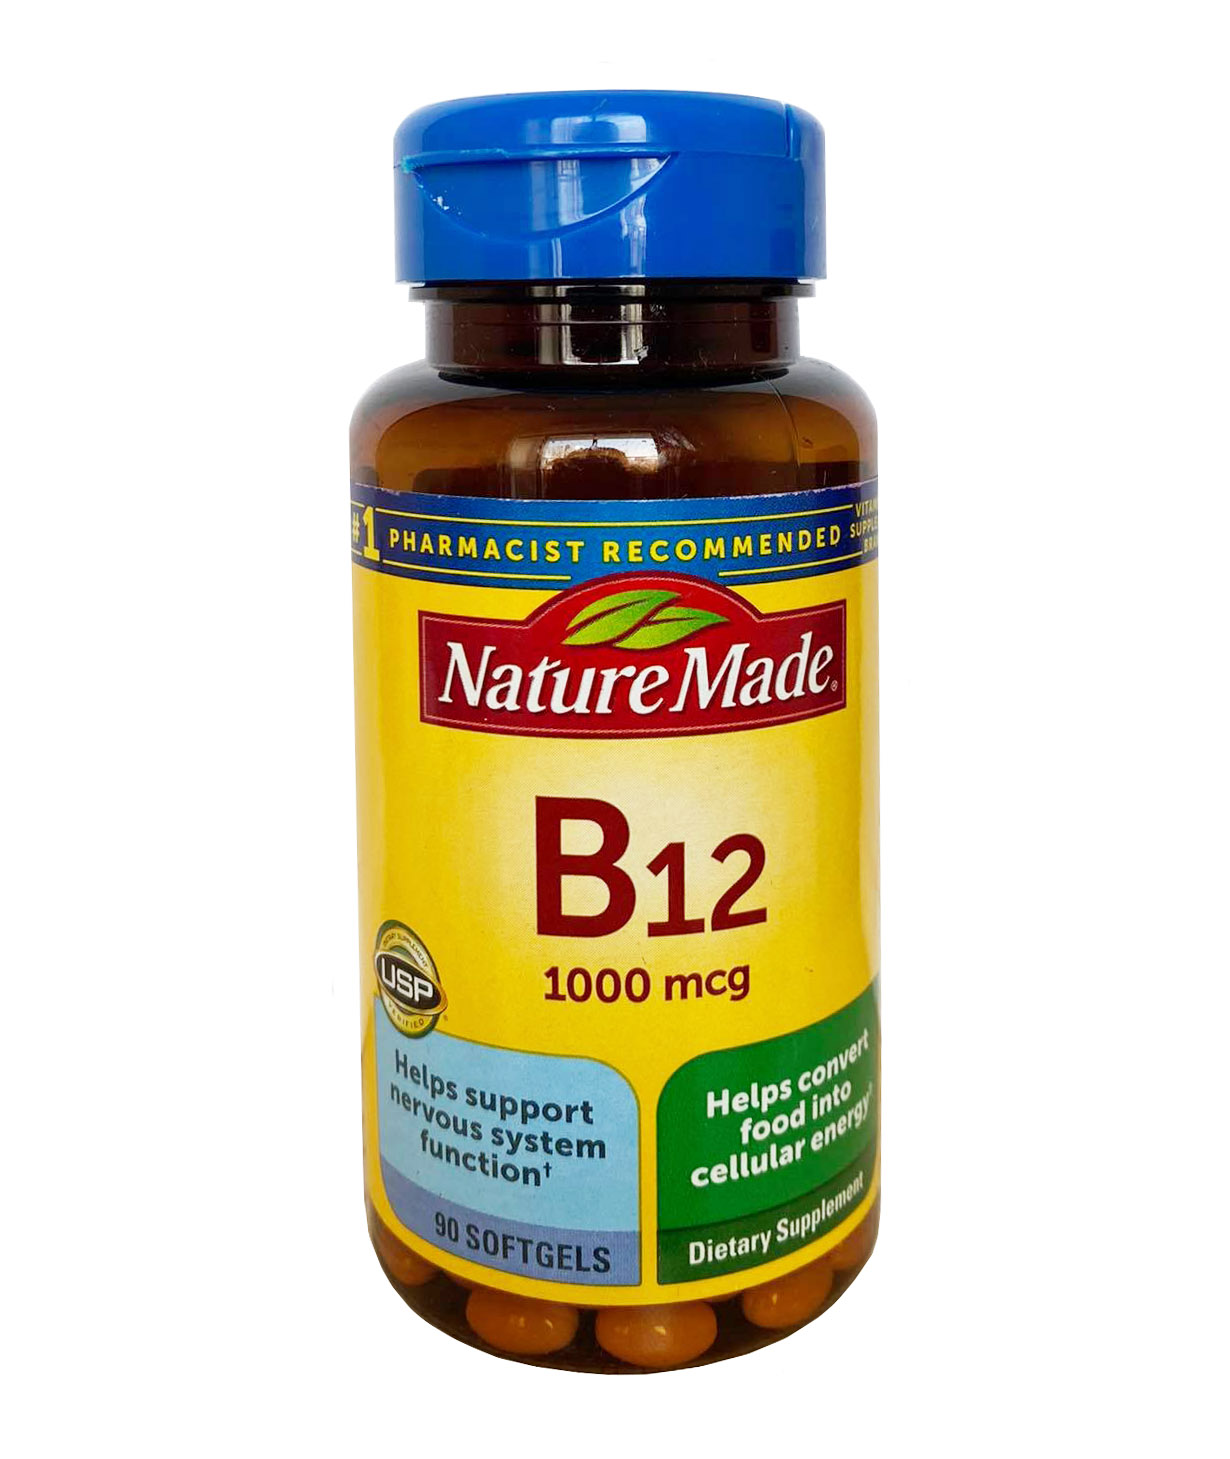 Nature Made Vitamin B12 có những thành phần đi kèm nào?
